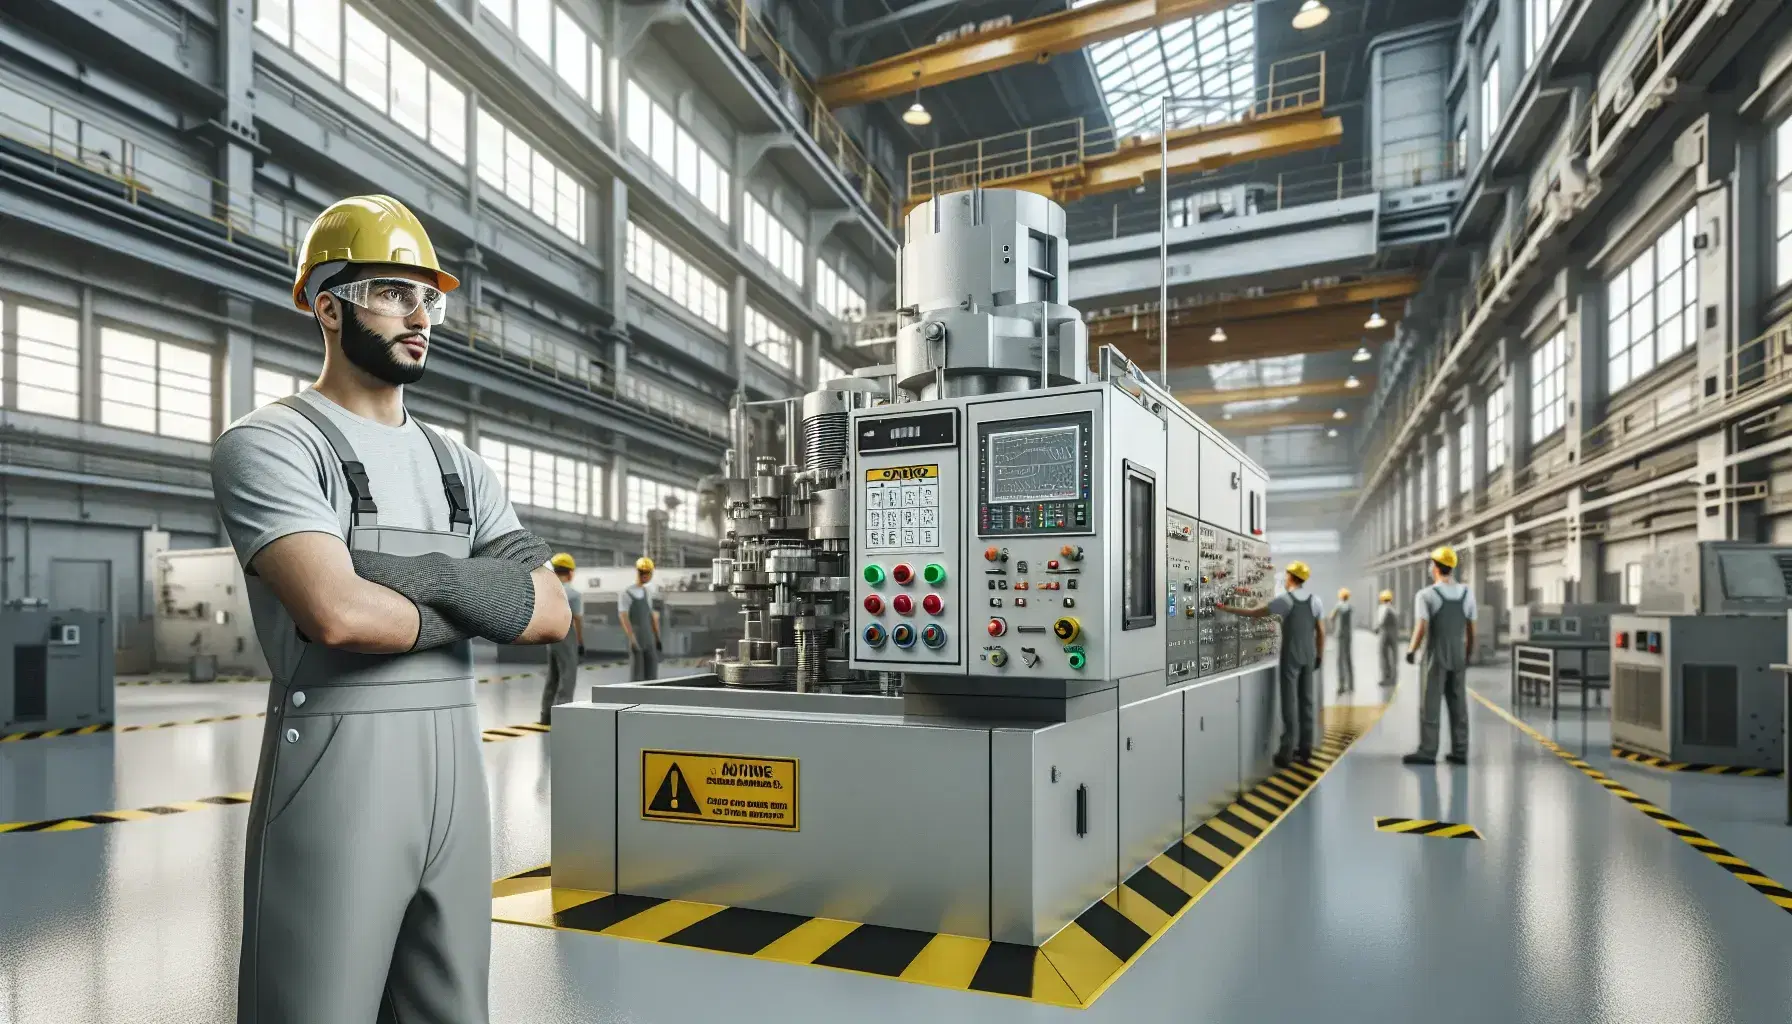 Trabajador con casco de seguridad en taller industrial junto a maquinaria con botones de control, señales de seguridad al fondo y suelo demarcado.